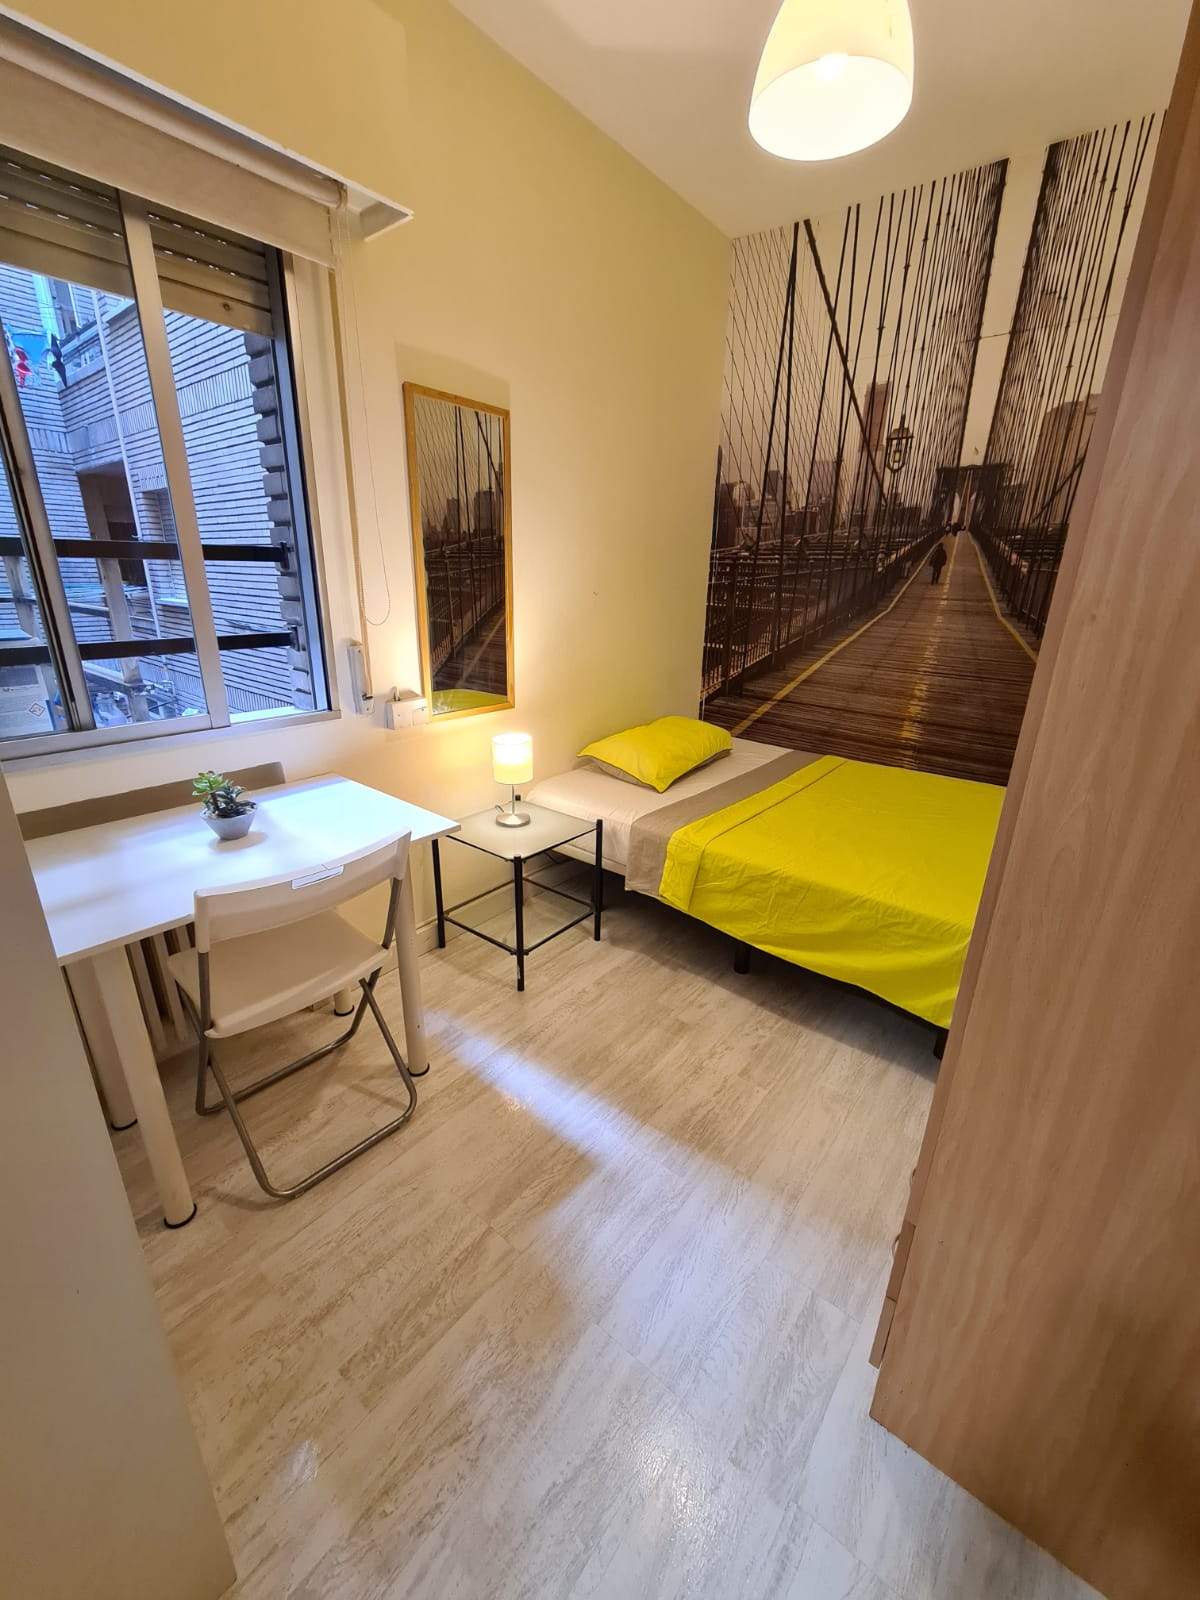 Habitaciones en piso compartido en Madrid - DRE7